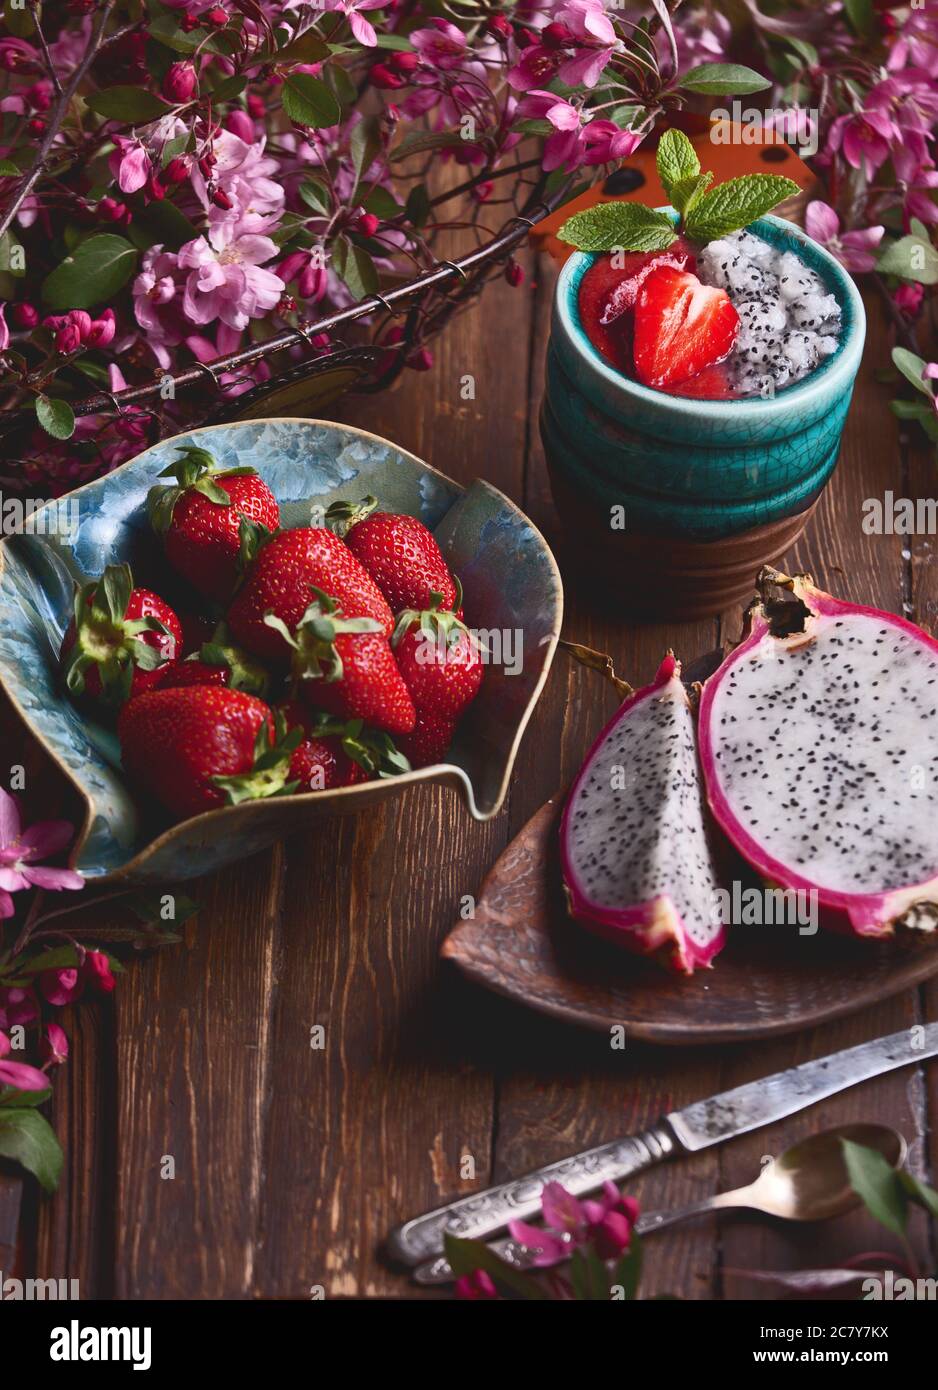 flatlay food sfondo - vuoto bordo di legno scuro con frutta di drago, fragole, frullato fresco e fiori rosa, copia spazio per il testo Foto Stock